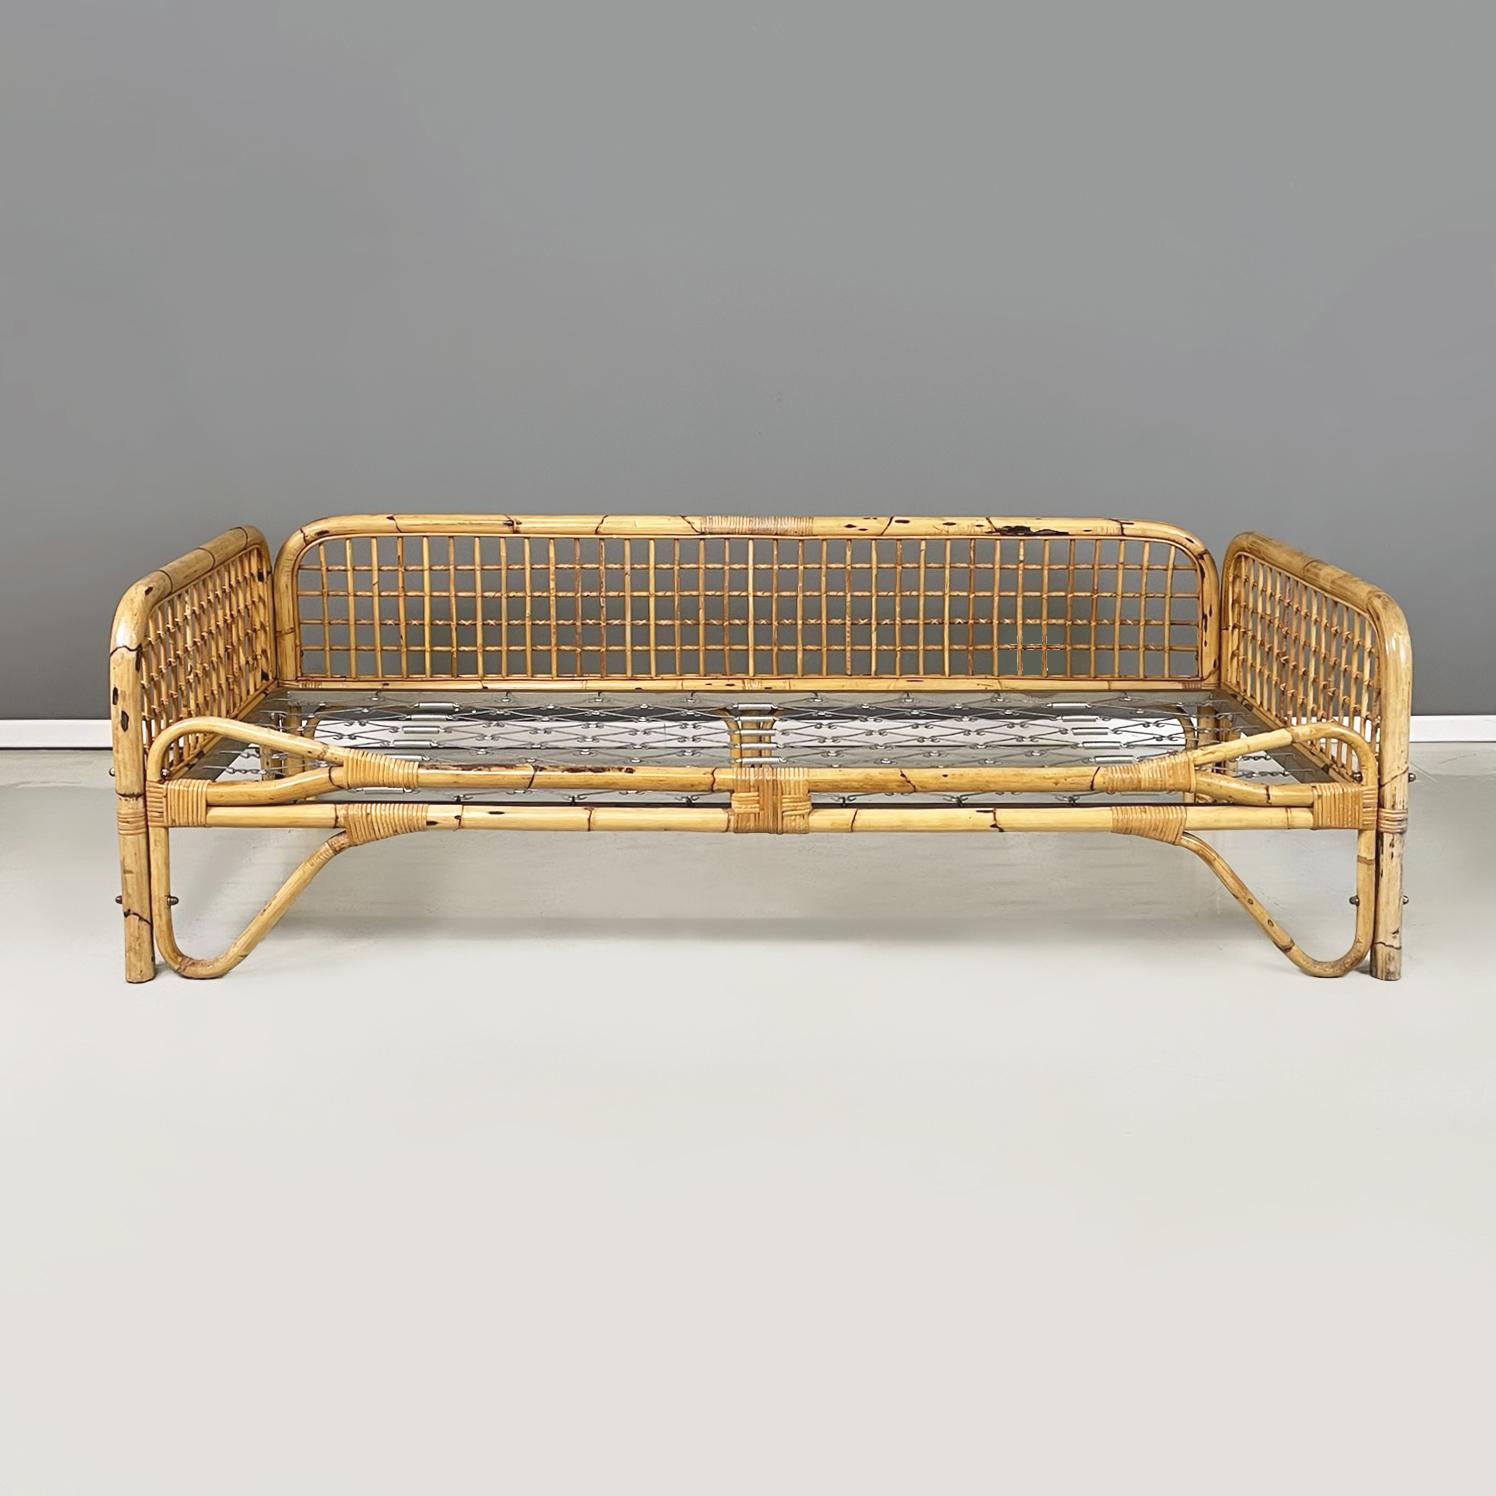 Italienisches Daybed aus der Mitte des Jahrhunderts, Bett oder Sofa aus Rattan und Metallgeflecht, 1970er Jahre
Liege mit fein geflochtener Rattanstruktur. Die Sitzfläche besteht aus einem Metallgeflecht, auf das eine Matratze gelegt werden kann, um